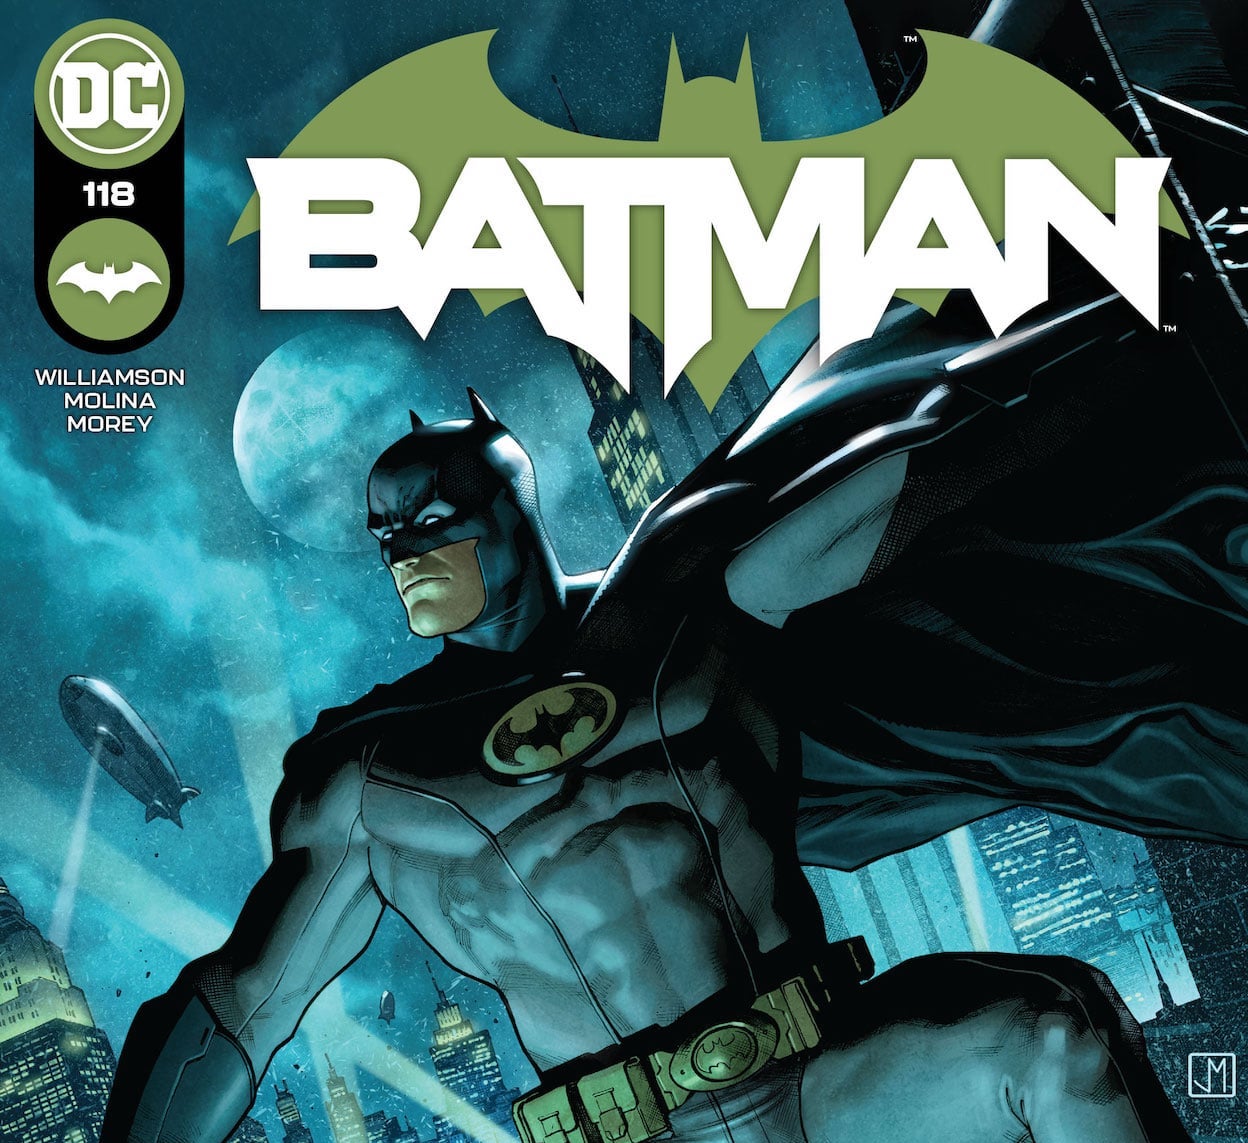 DC Preview: Batman #118